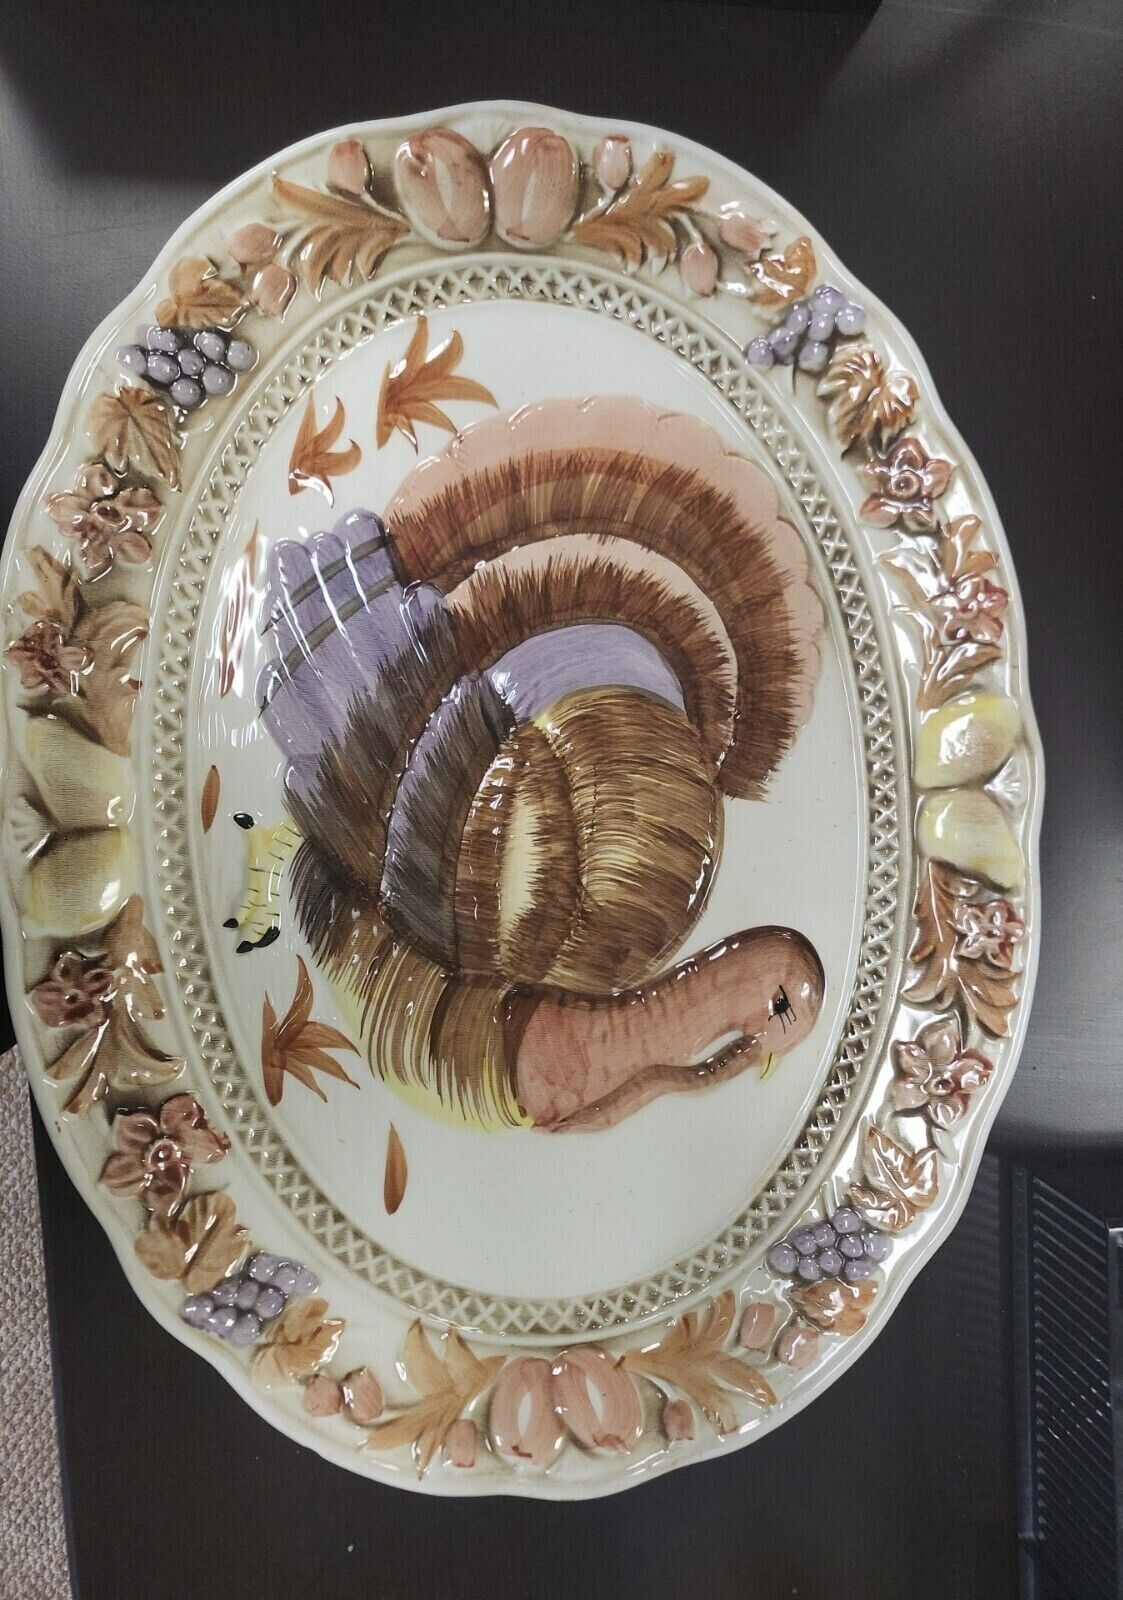 Gailstyn-Sutton vintage hand-painted large turkey platter